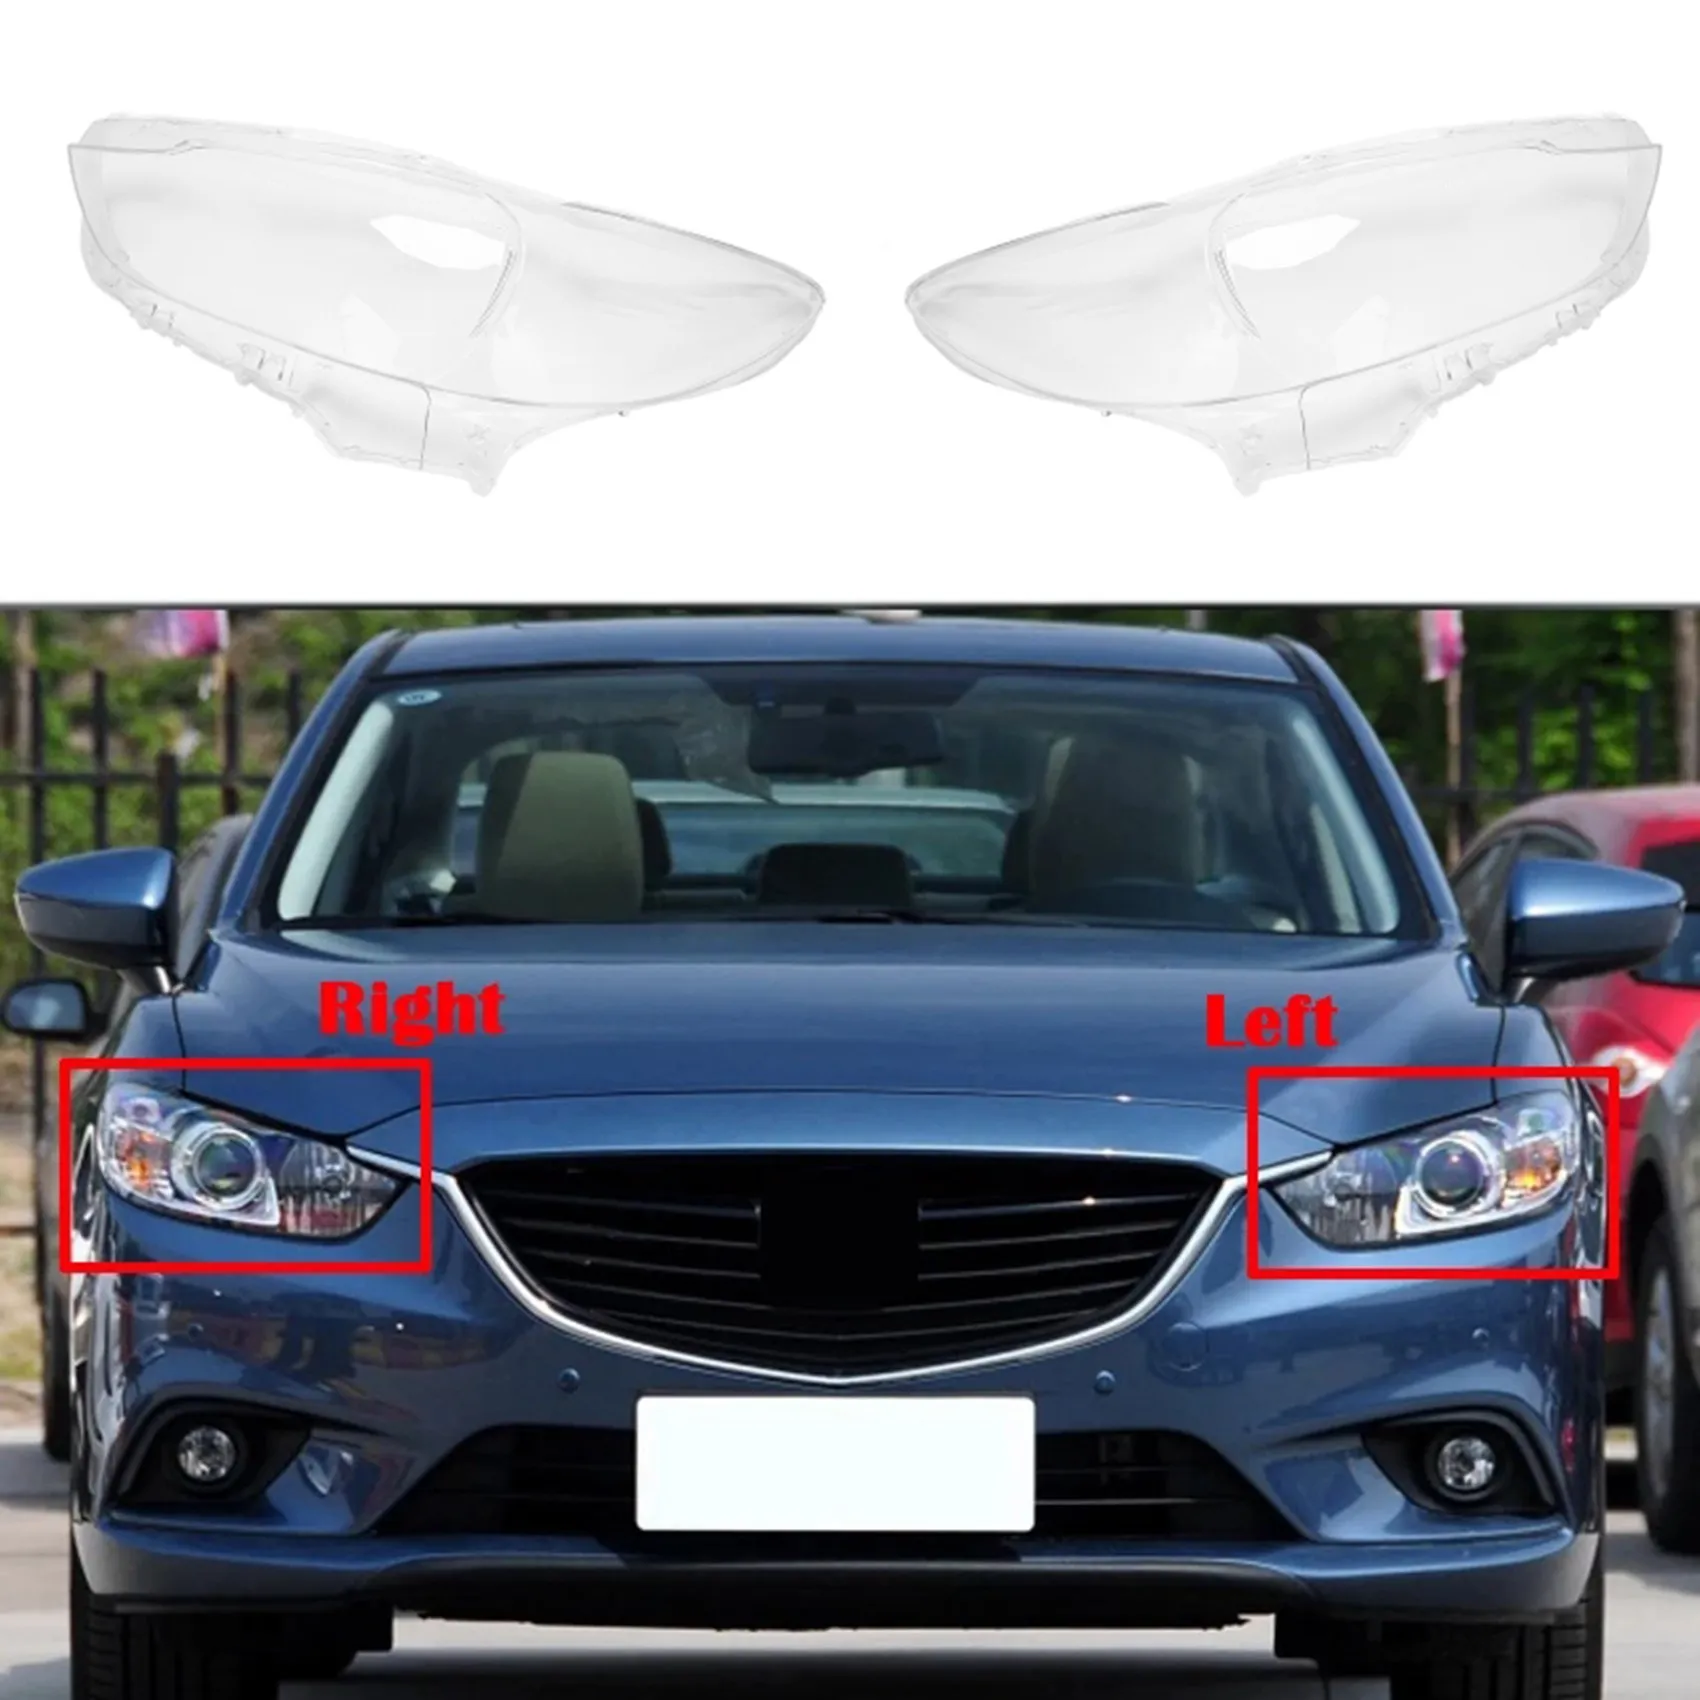 

Автомобильный правый налобный фонарь, прозрачный абажур, накладка на фару, чехол, маска на объектив для Mazda 6 Atenza 2013- 2016